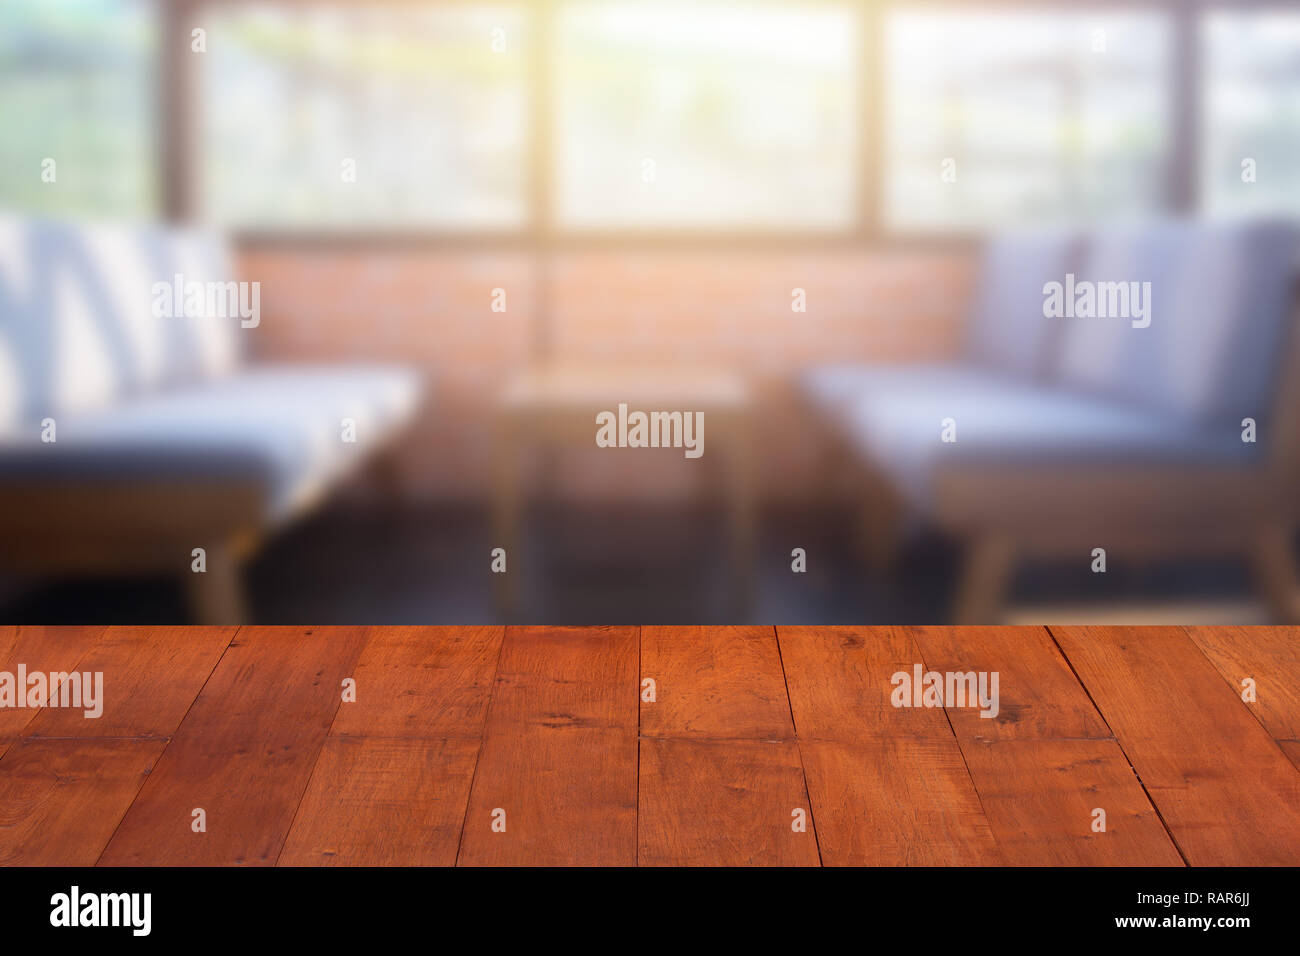 Blur Cafe und Restaurant mit Tischplatte für Produkte Werbung raum Hintergrund. Stockfoto